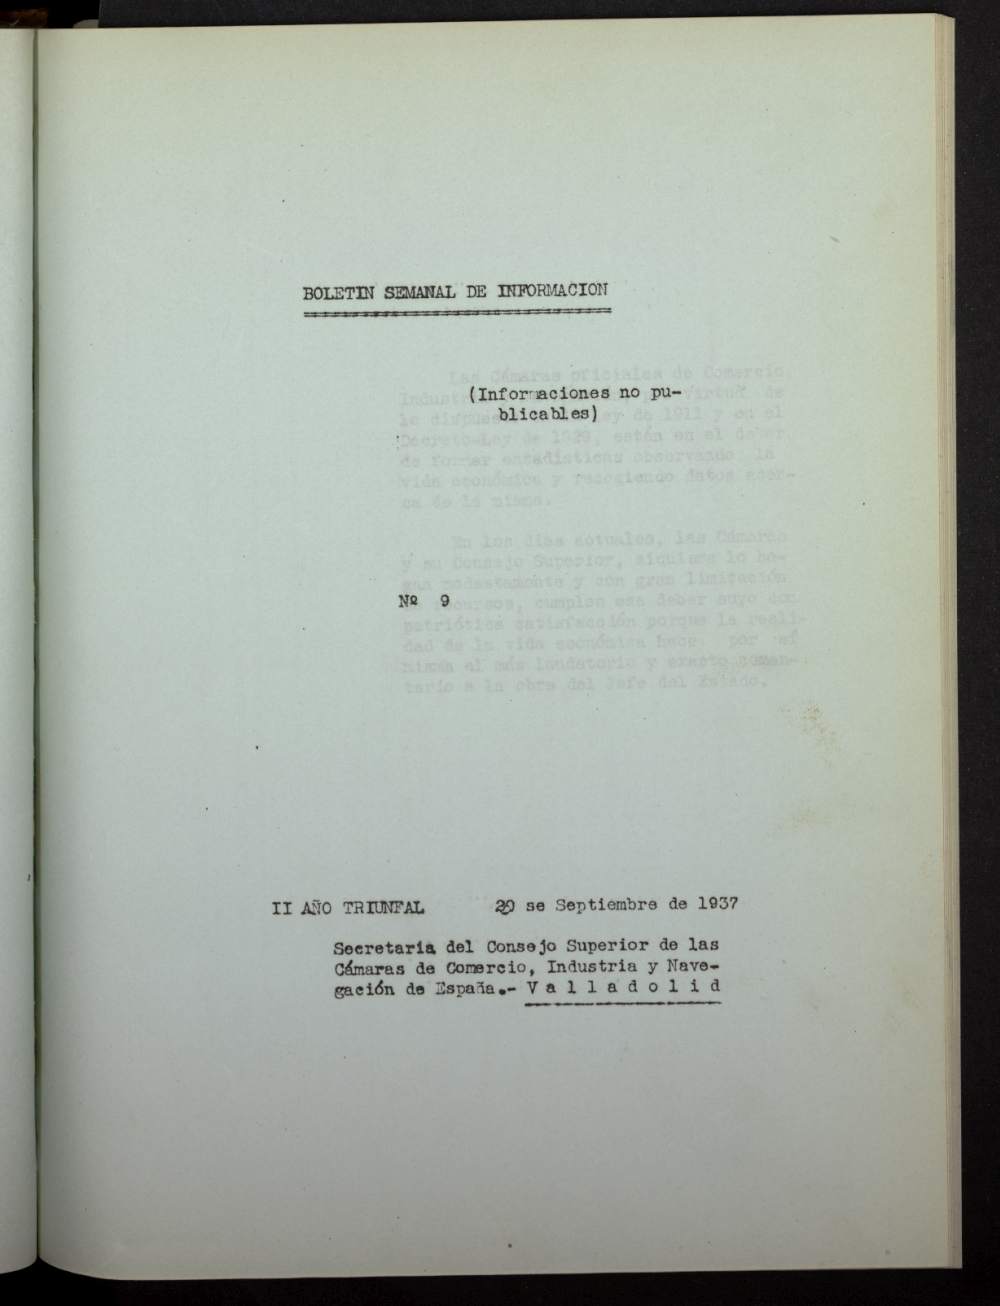 Boletín Semanal de Información. Consejo Superior de las Cámaras de Comercio de España del 20 de septiembre de 1937, nº 9